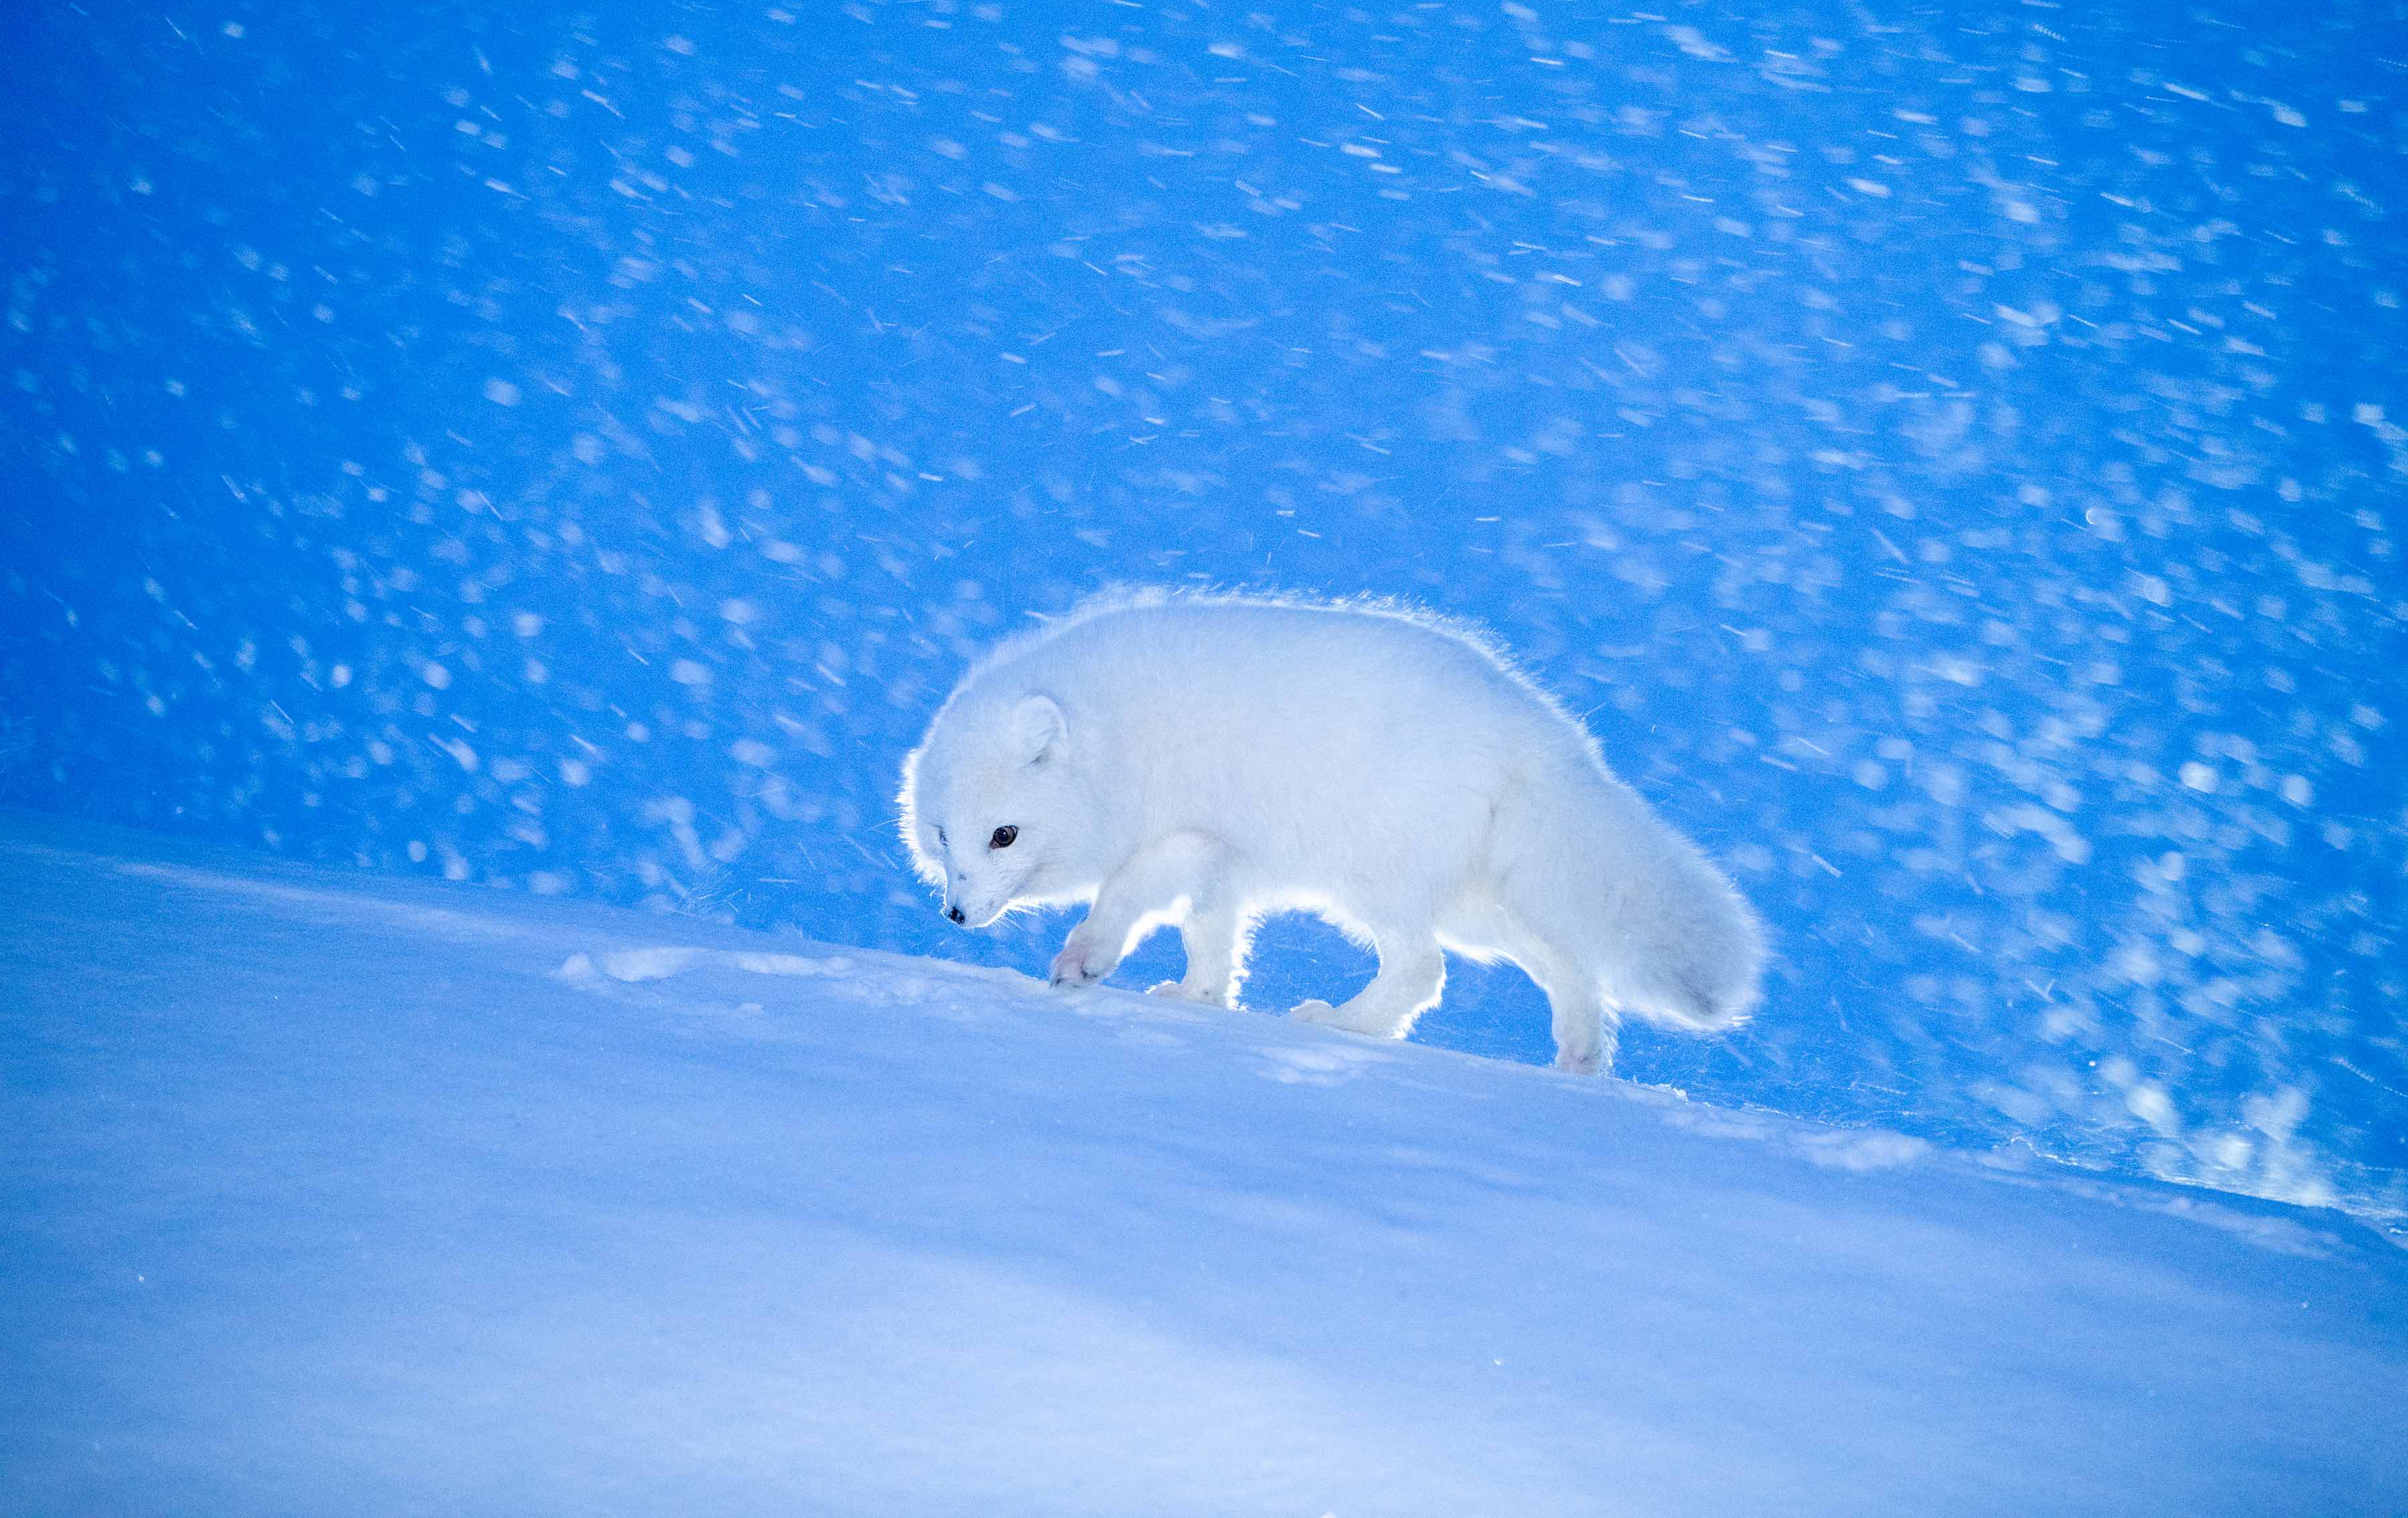 Artic fox©Kurt Selmer, journal of wild culture ©2021